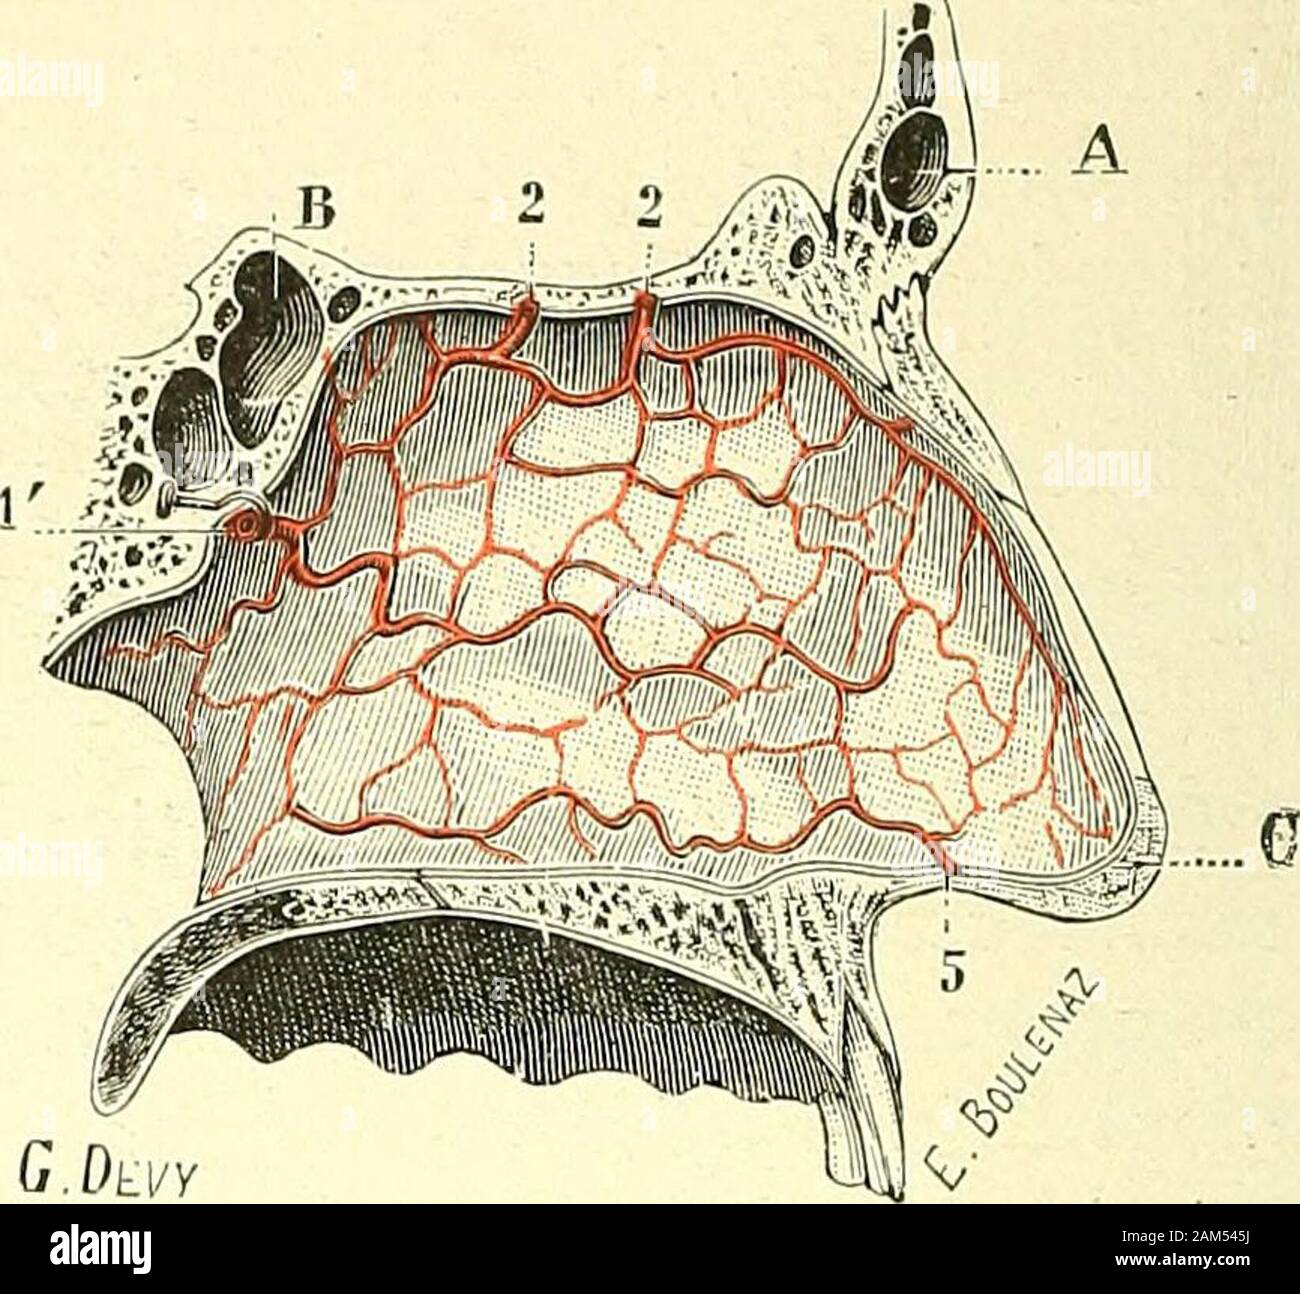 Traité d'anatomie humaine . Fig. 251.Artères des fosses nasales, paroi externe.. Fig. 252.Artères des fosses nasales, paroi interne. 1, artère sphcno-palaline. — 2, ailères ethmoïdales antérieure et postérieure — 3, ptérygo-palatine. — 4, palatinedescendante. — 5, anasioniose avec les artères sous-orbitaire et faciale. — A, sinus frontal. — B, sinus sphénoïdal. —G, lobule du nez. distribue plus spécialement au cornet inférieur; 4° la sous-orbitaire qui envoiequelques rameaux au sinus maxillaire ; 5° la ptérygo-palatine, qui se ramifie à laface inférieure du sphénoïde ; 6° la faciale, enfin, qu Stock Photo